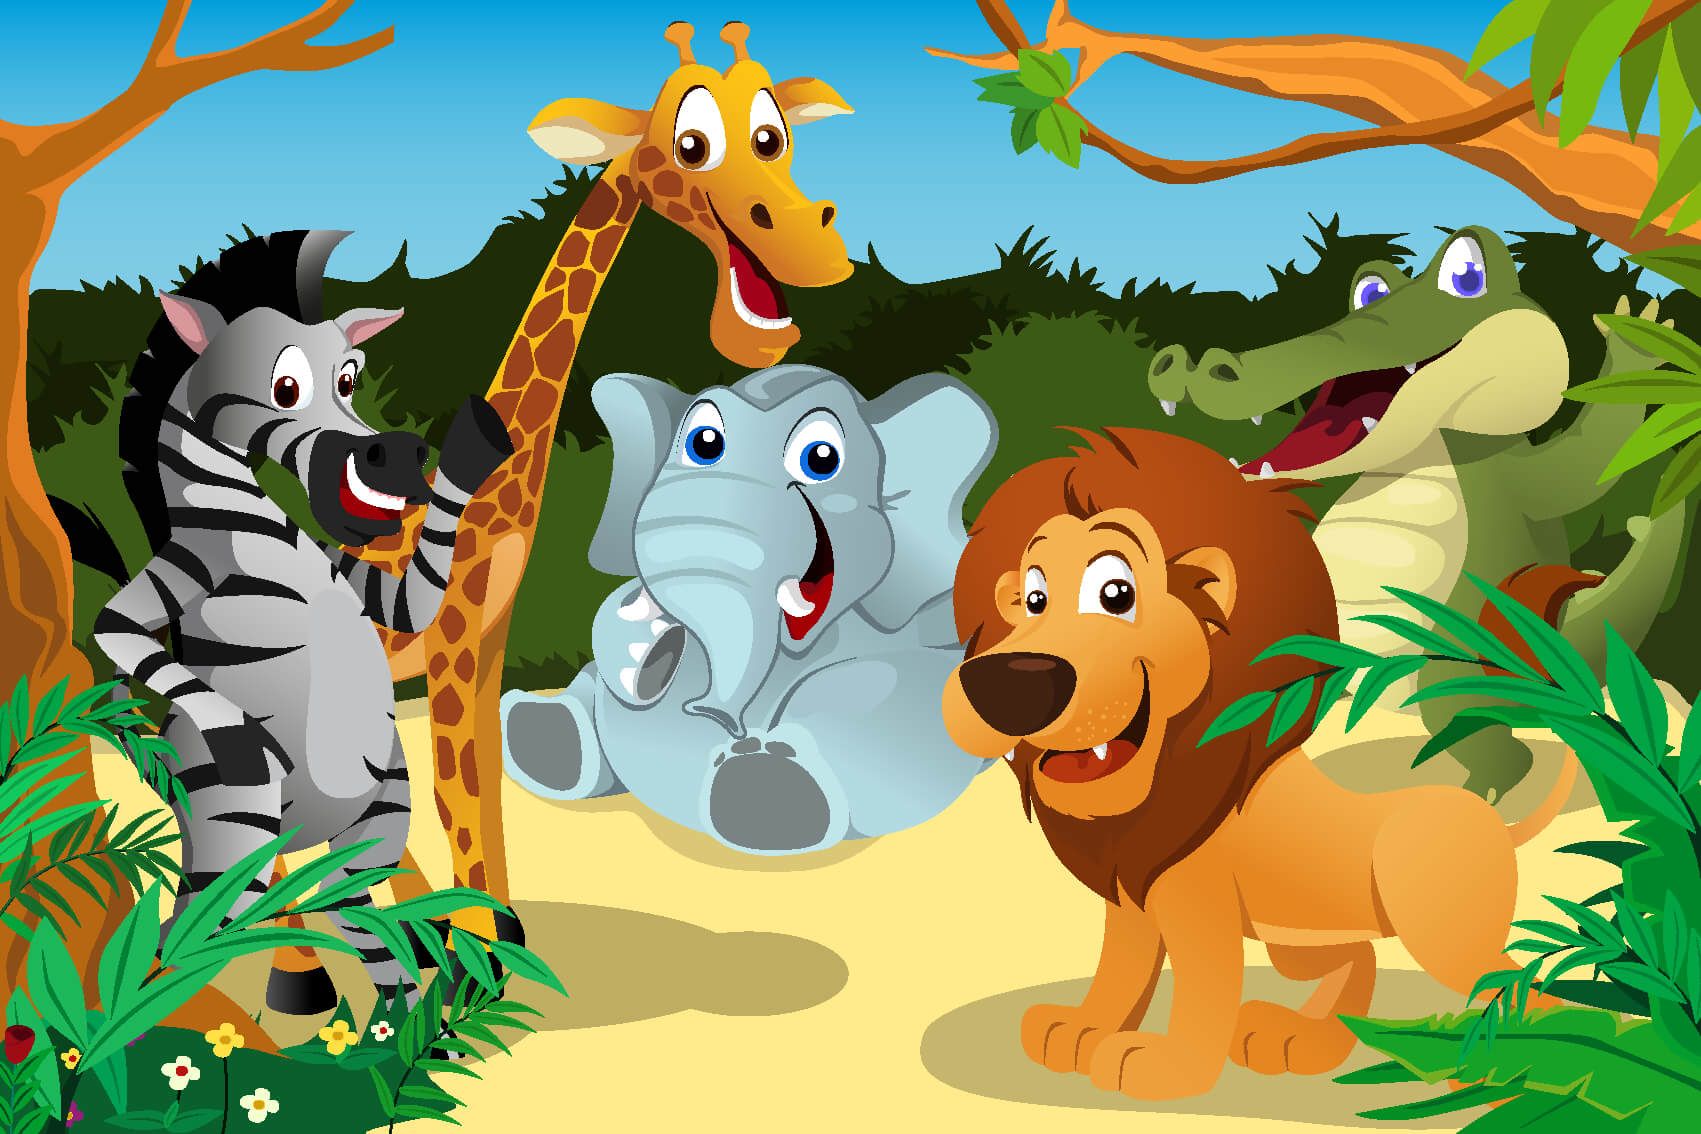 Safari Animals - Animaux sauvages joyeux - Chambre des enfants